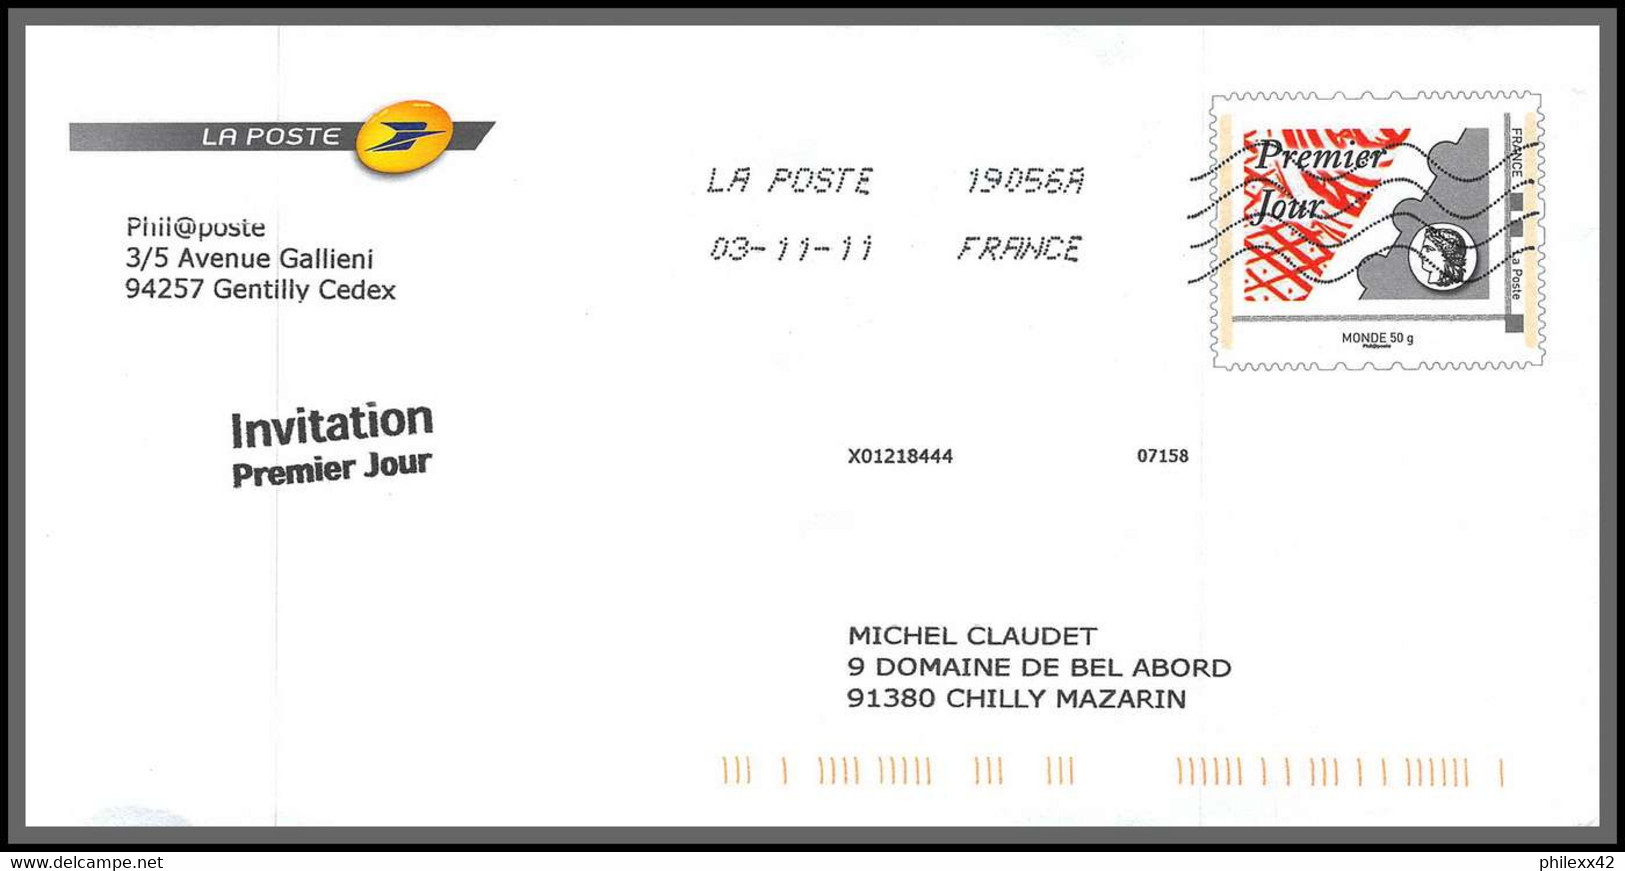 départ 1 euro - 95939 - lot de 45 entiers entier postaux stationery PAP de service...  Tous différents